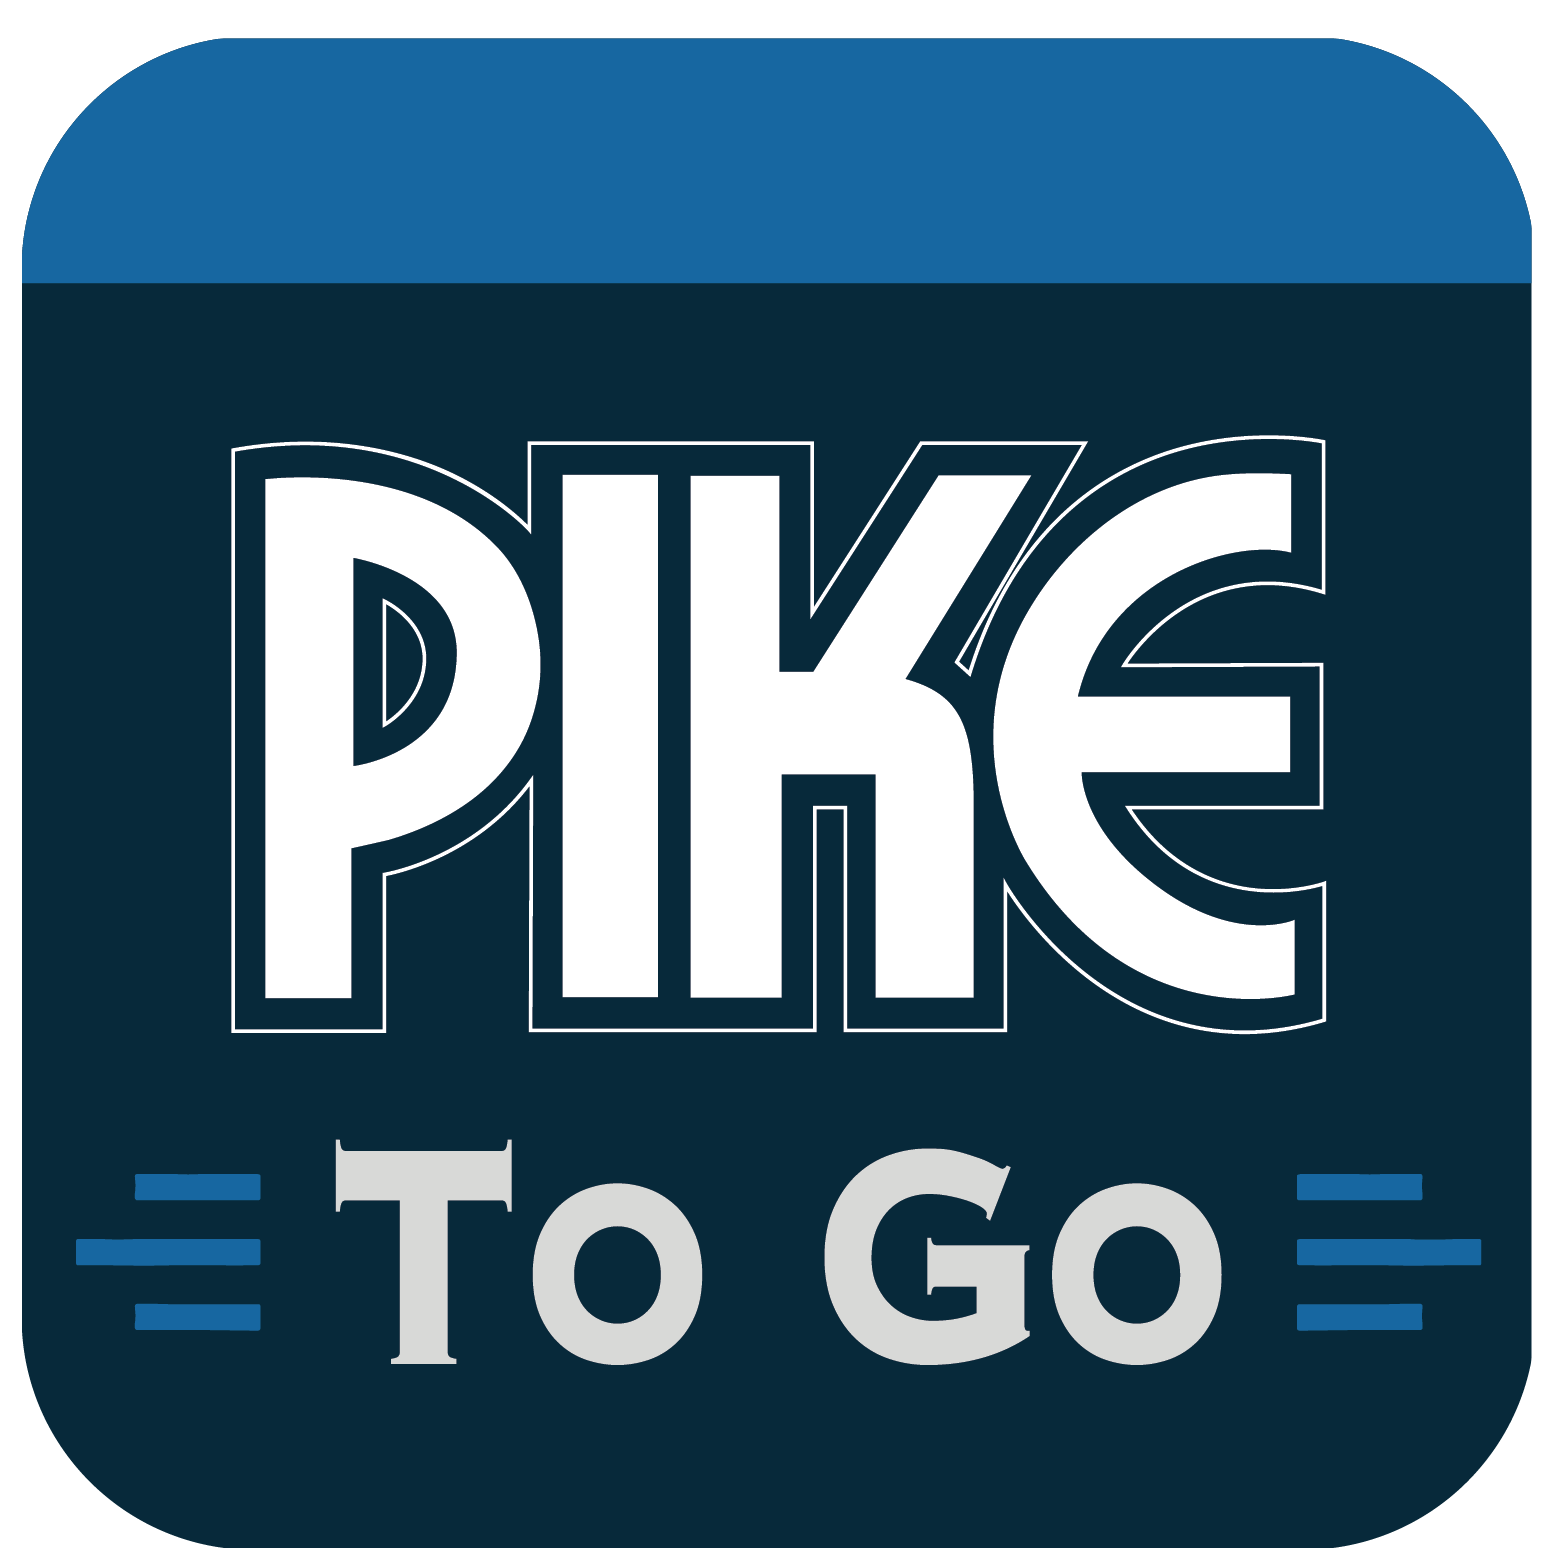 pike to go logo